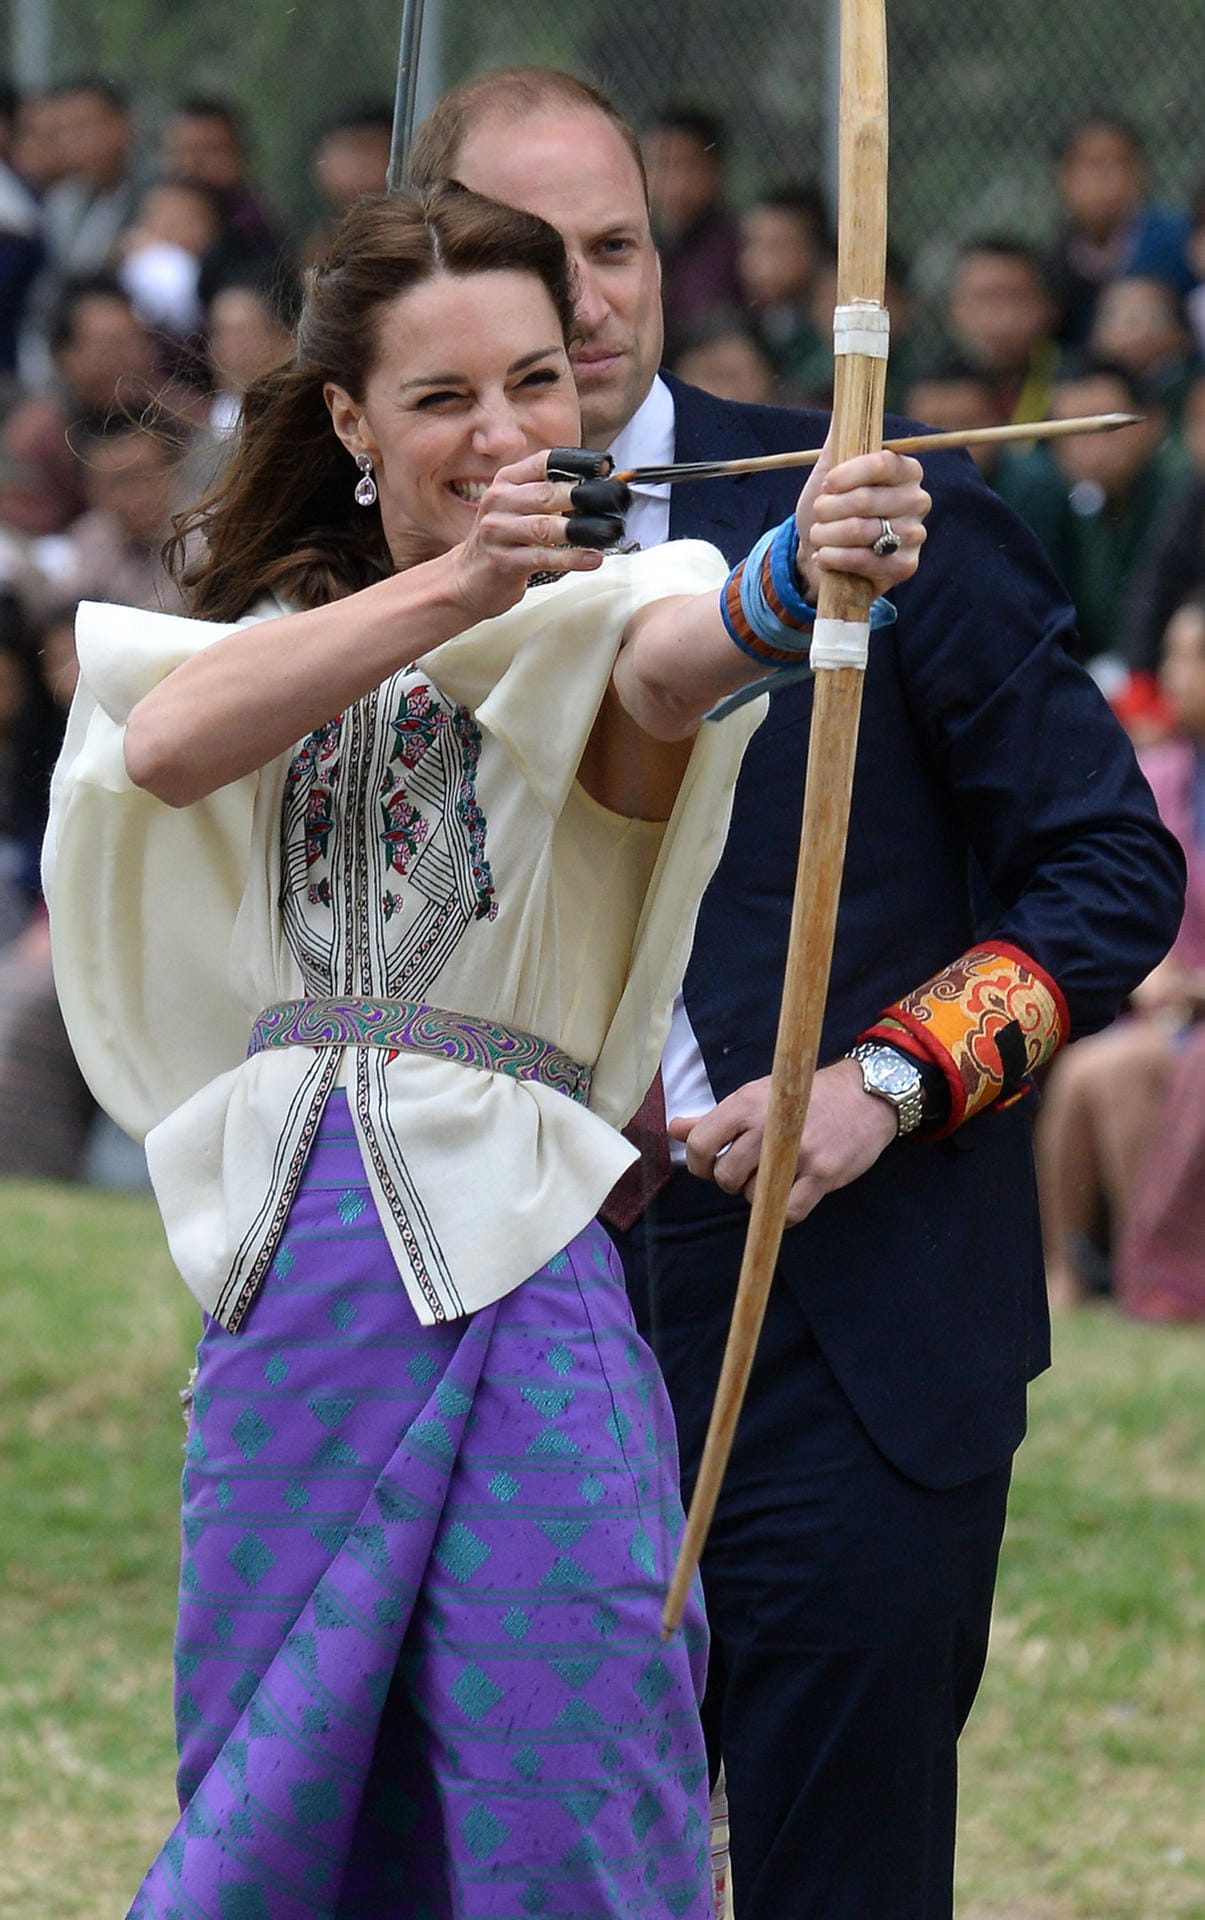 Bei ihrem Besuch in Bhutan versuchte sich Herzogin Kate in der Hauptstadt Thimphu bei einem Bogenschieß-Wettbewerb. Ihre Pfeile verfehlten das Ziel allerdings deutlich.